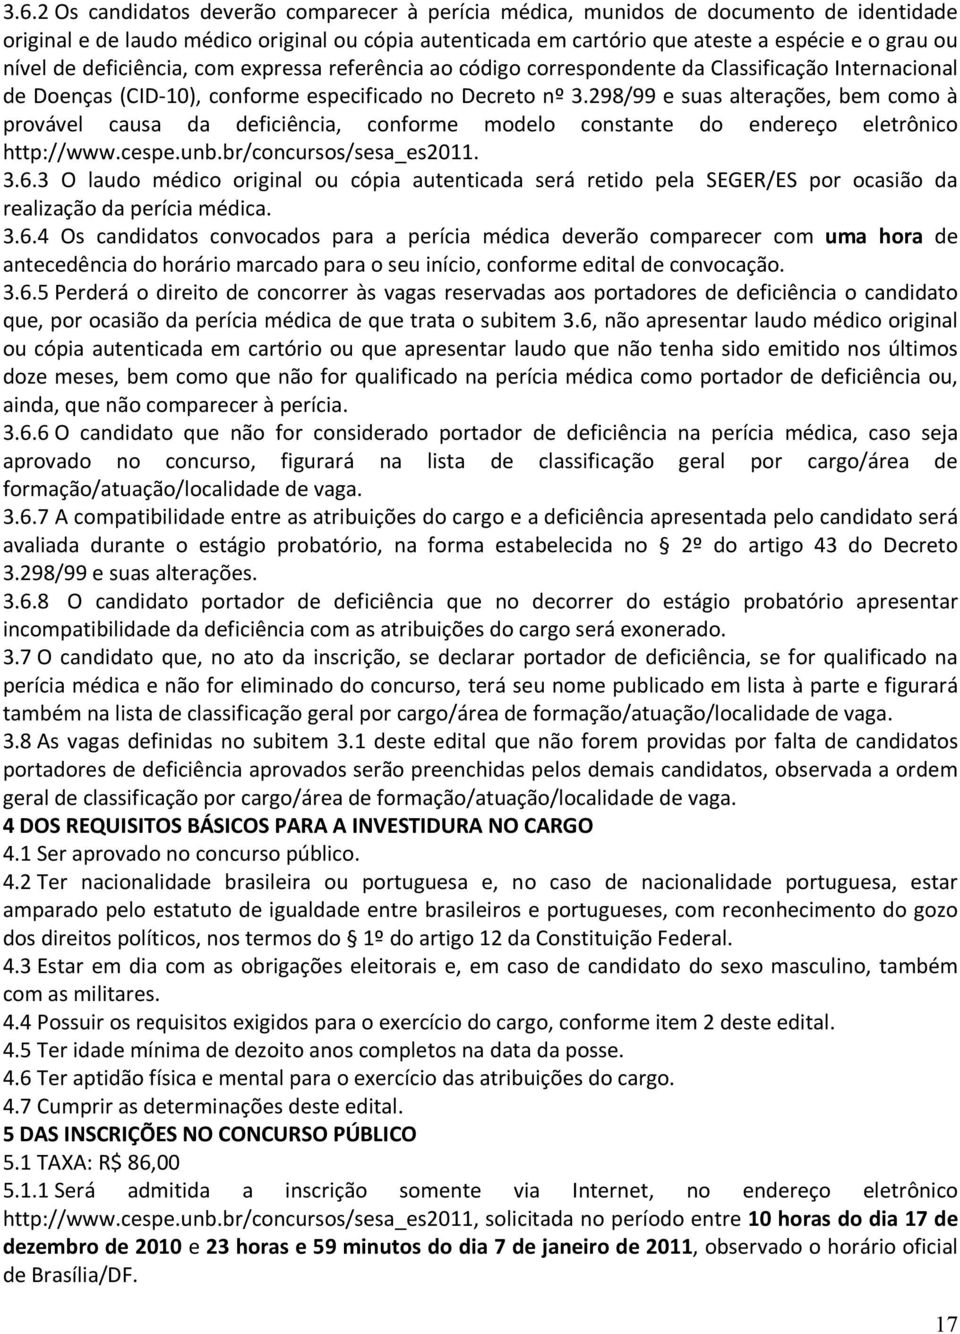 298/99 e suas alterações, bem como à provável causa da deficiência, conforme modelo constante do endereço eletrônico http://www.cespe.unb.br/concursos/sesa_es2011. 3.6.